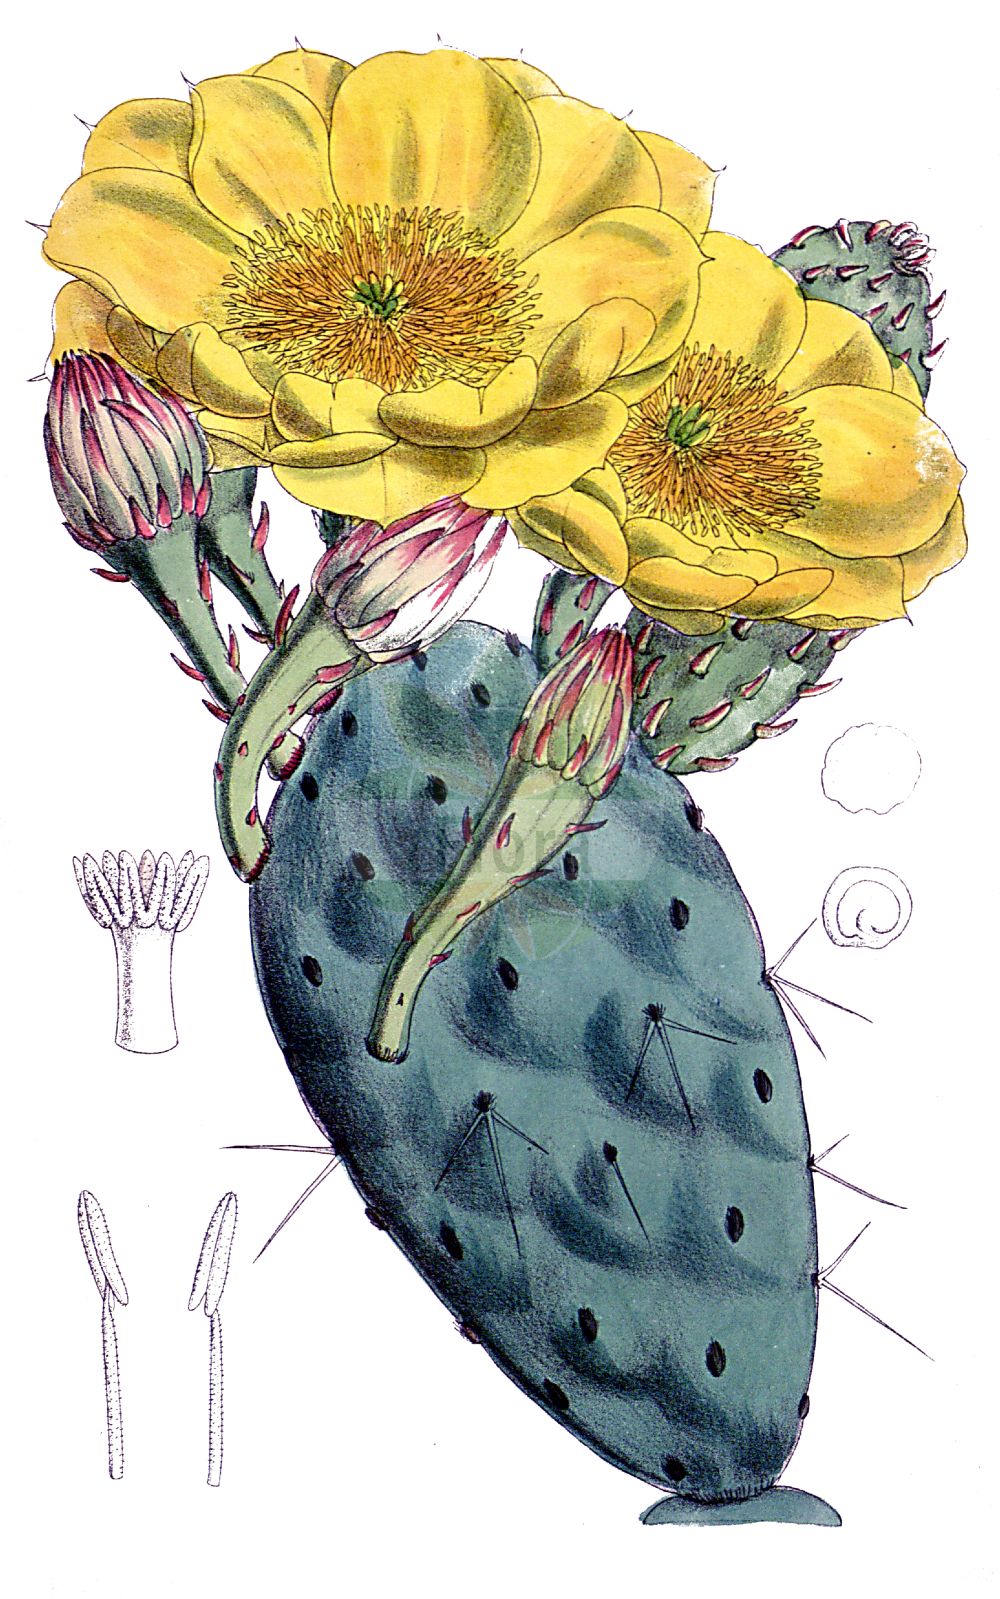 Historische Abbildung von Opuntia humifusa (Eastern Prickly Pear). Das Bild zeigt Blatt, Bluete, Frucht und Same. ---- Historical Drawing of Opuntia humifusa (Eastern Prickly Pear). The image is showing leaf, flower, fruit and seed.(Opuntia humifusa,Eastern Prickly Pear,Cactus humifusus,Opuntia ammophila,Opuntia humifusa,Opuntia nana,Opuntia rafinesquii,Eastern Prickly Pear,Devil's-tongue,Low Prickly Pear,Prostrate Cactus,Spreading Prickly Pear,Opuntia,Opuntie,Pricklypear,Cactaceae,Kakteengewächse,Blatt,Bluete,Frucht,Same,leaf,flower,fruit,seed,Curtis Botanical Magazine (1787f))